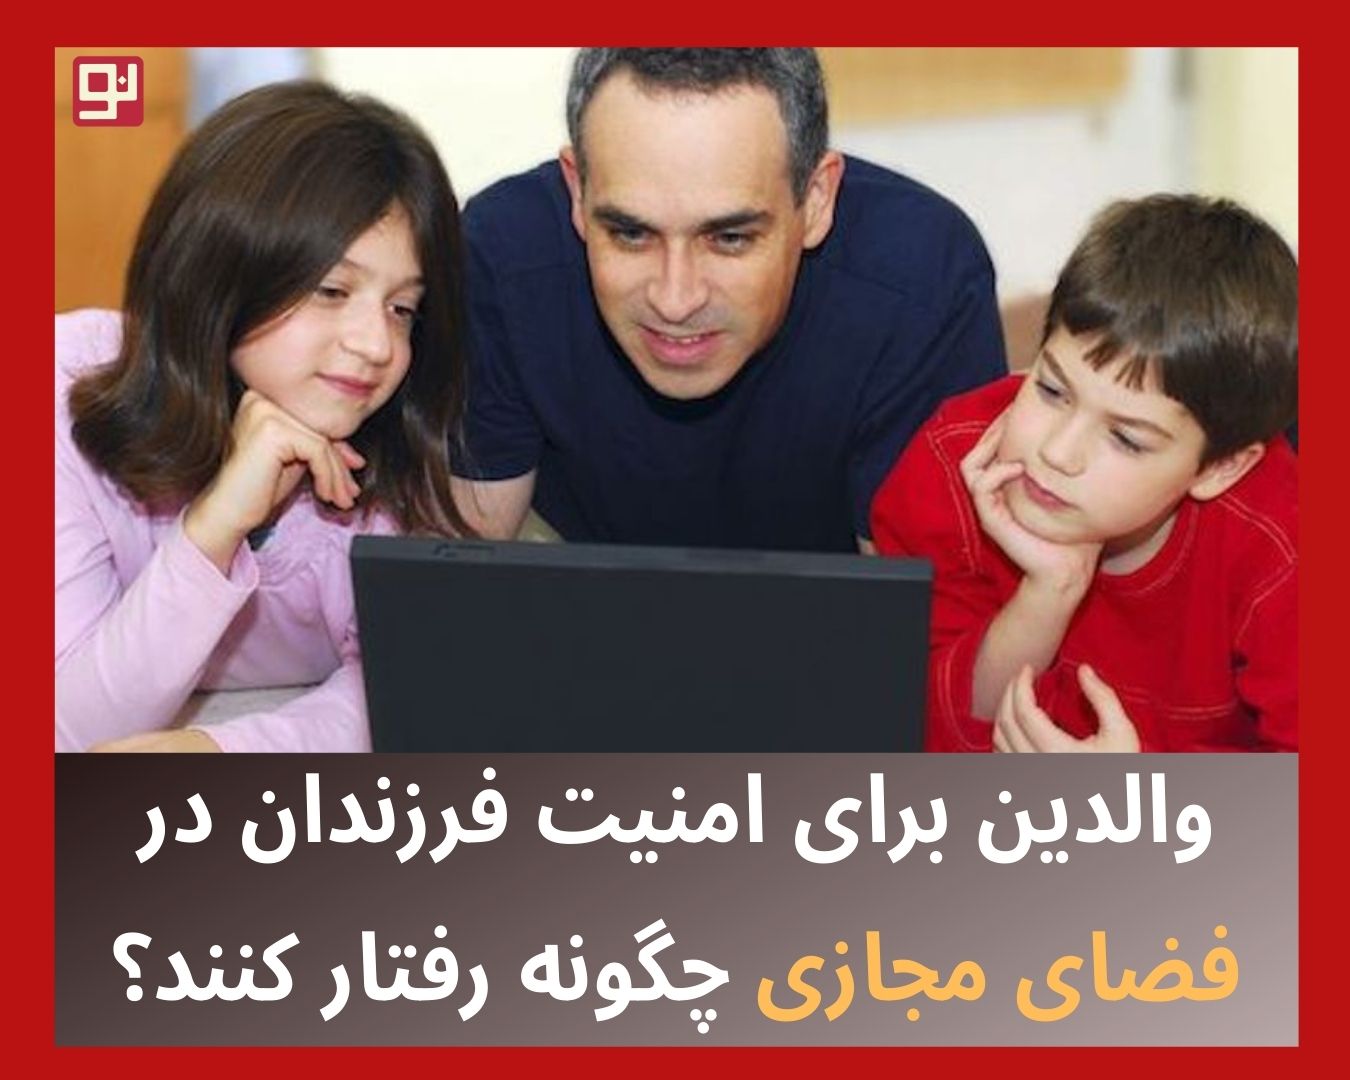 امنیت فرزندان در فضای مجازی